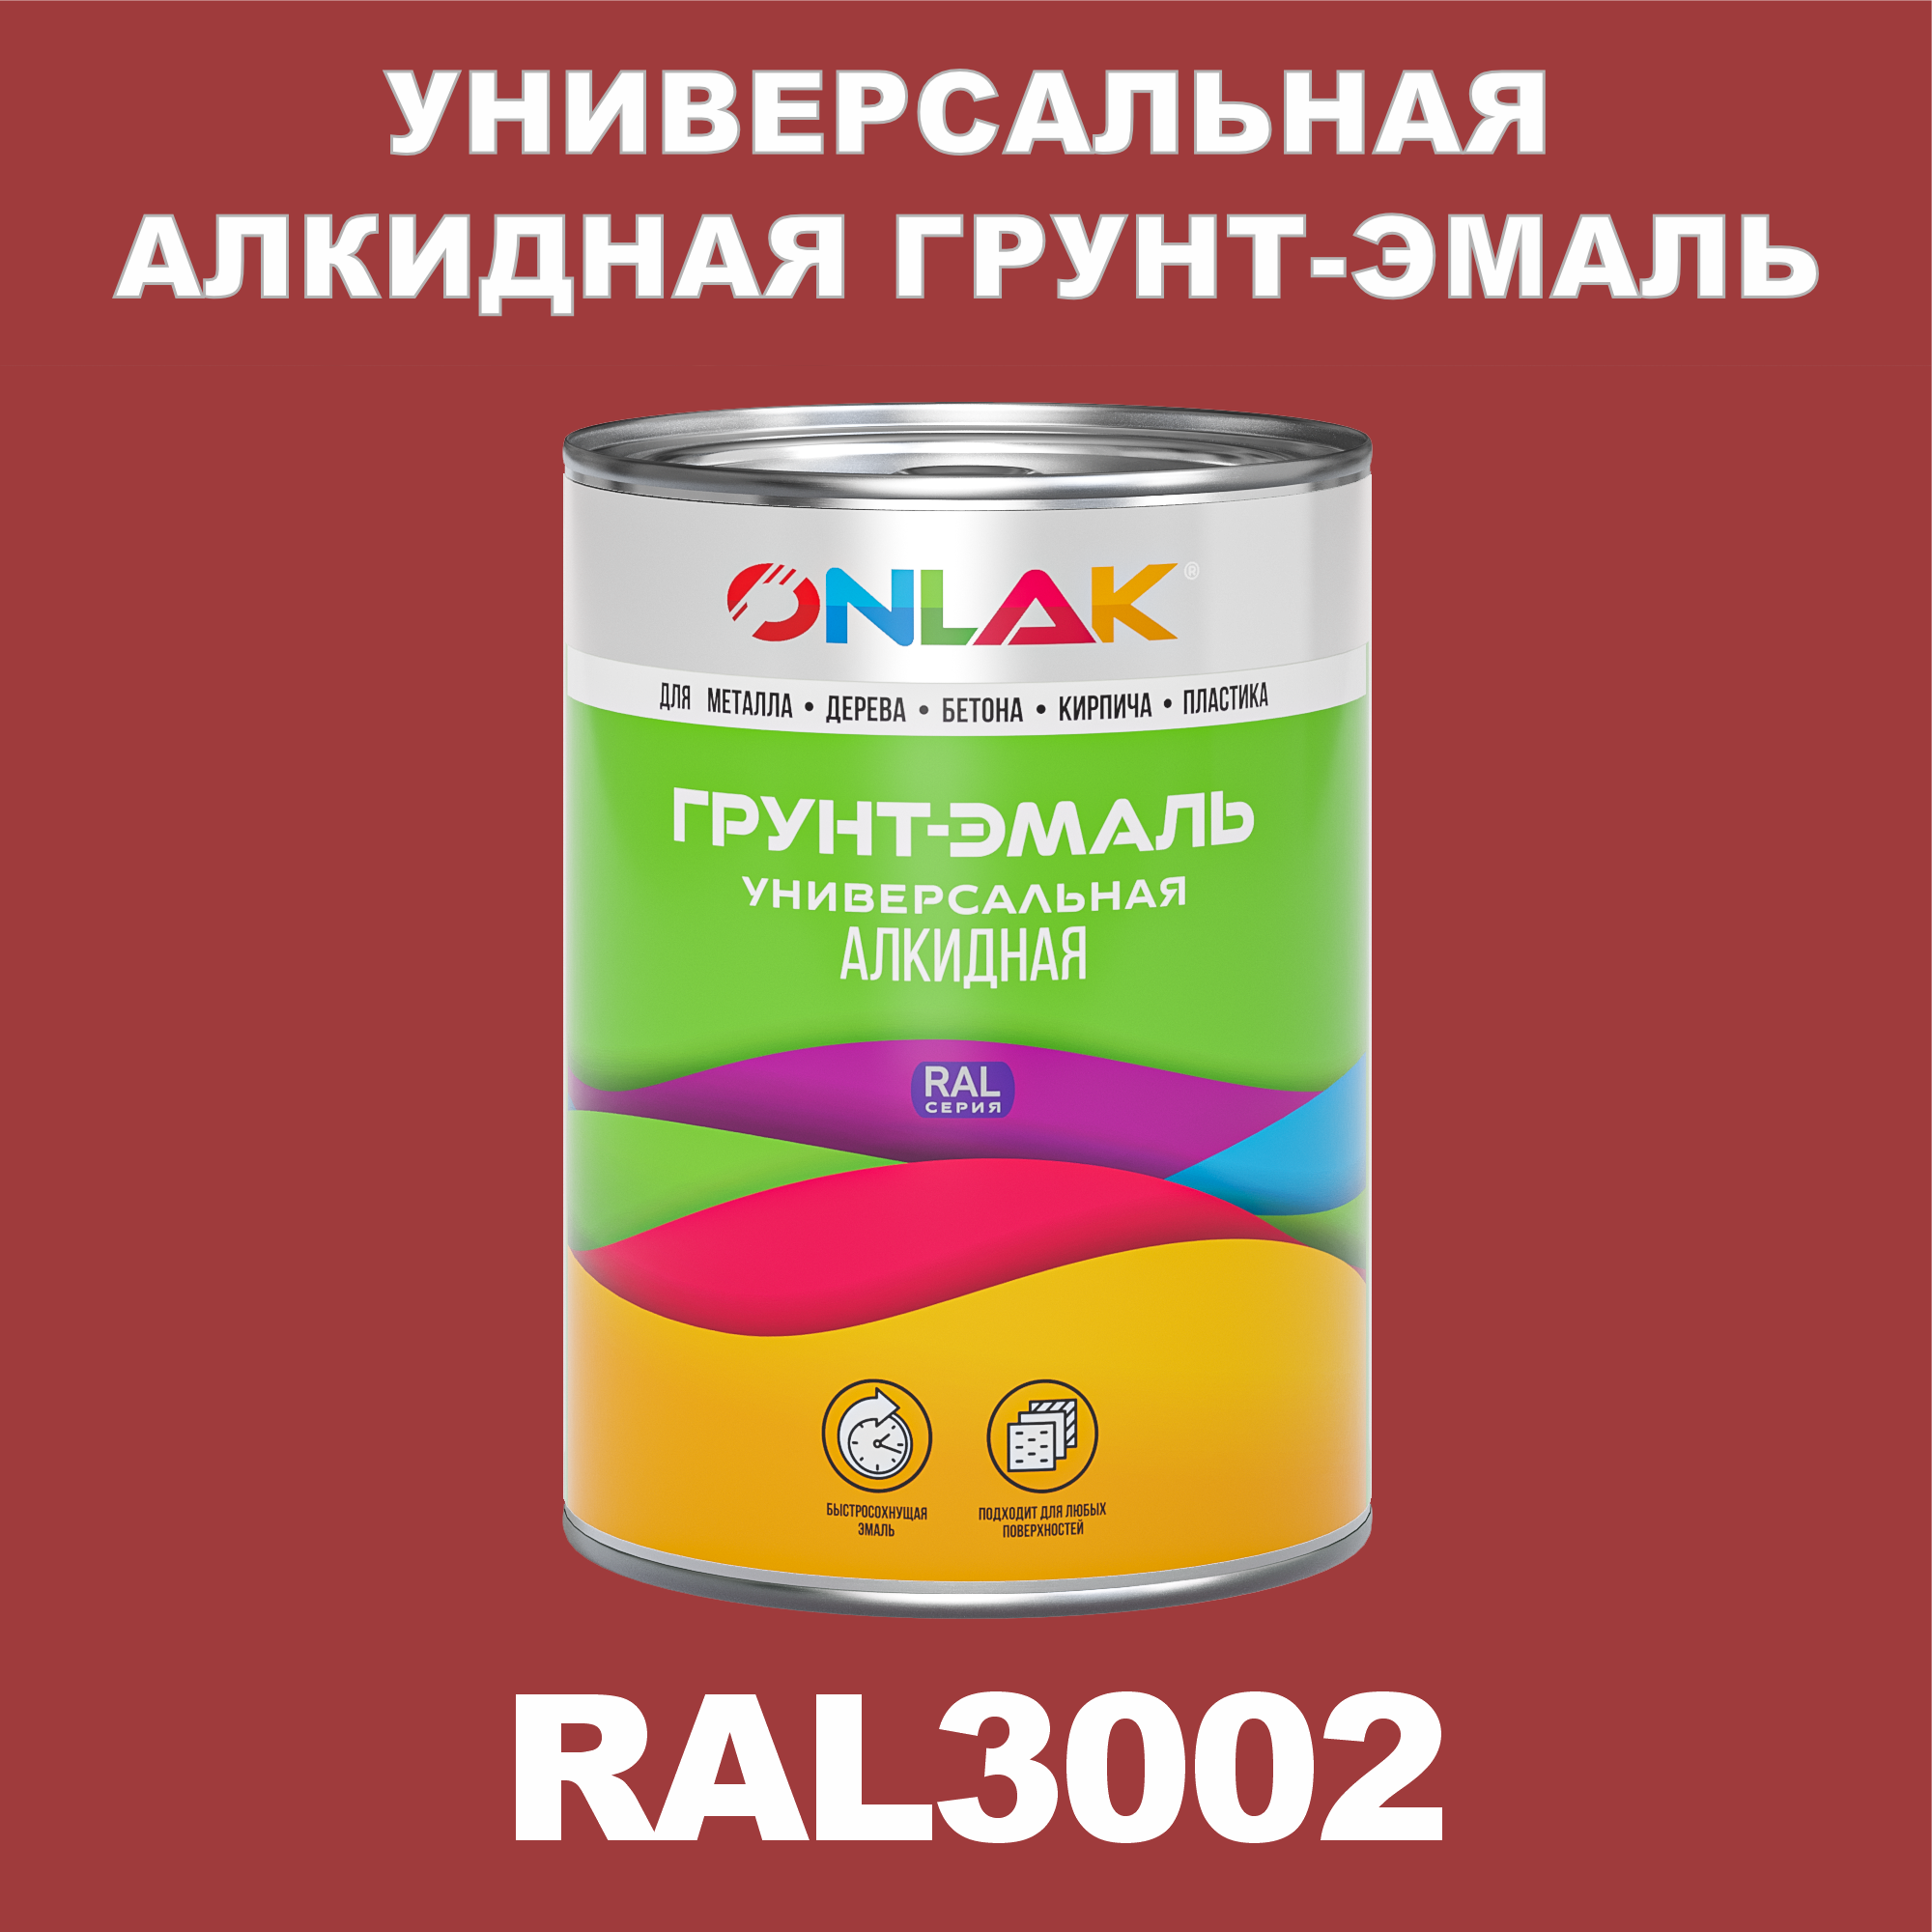 Грунт-эмаль ONLAK 1К RAL3002 антикоррозионная алкидная по металлу по ржавчине 1 кг антикоррозионная грунт эмаль onlak ral 3000 красный 693 мл